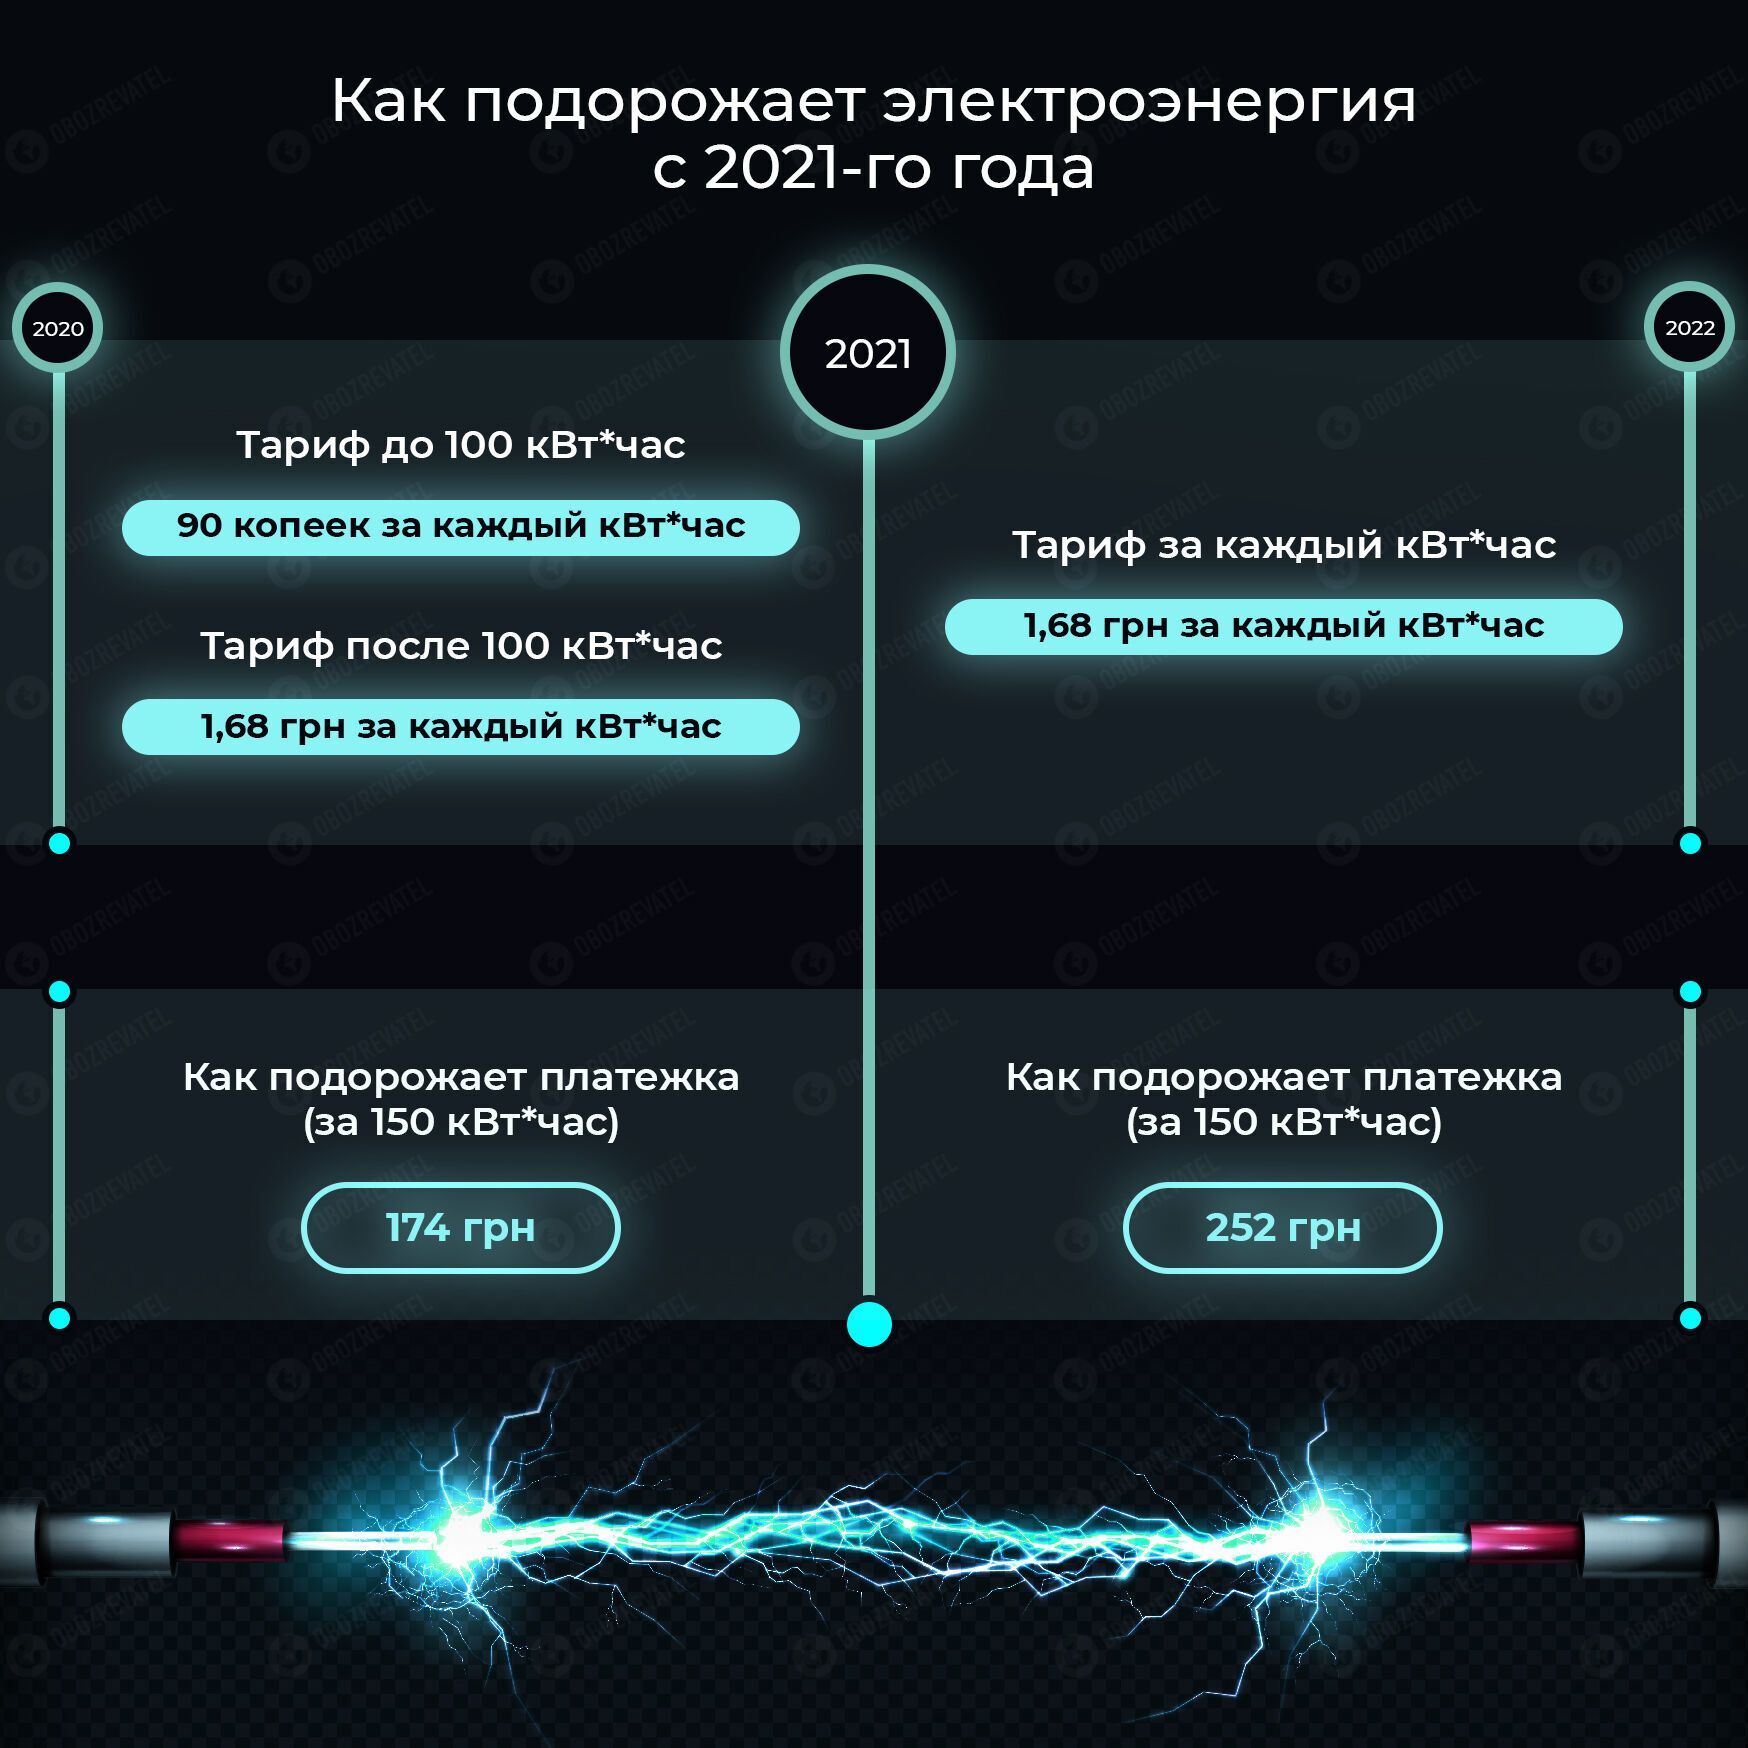 В Украине повысили тариф на электроэнергию почти в 2 раза, но и это не предел: сколько будем платить